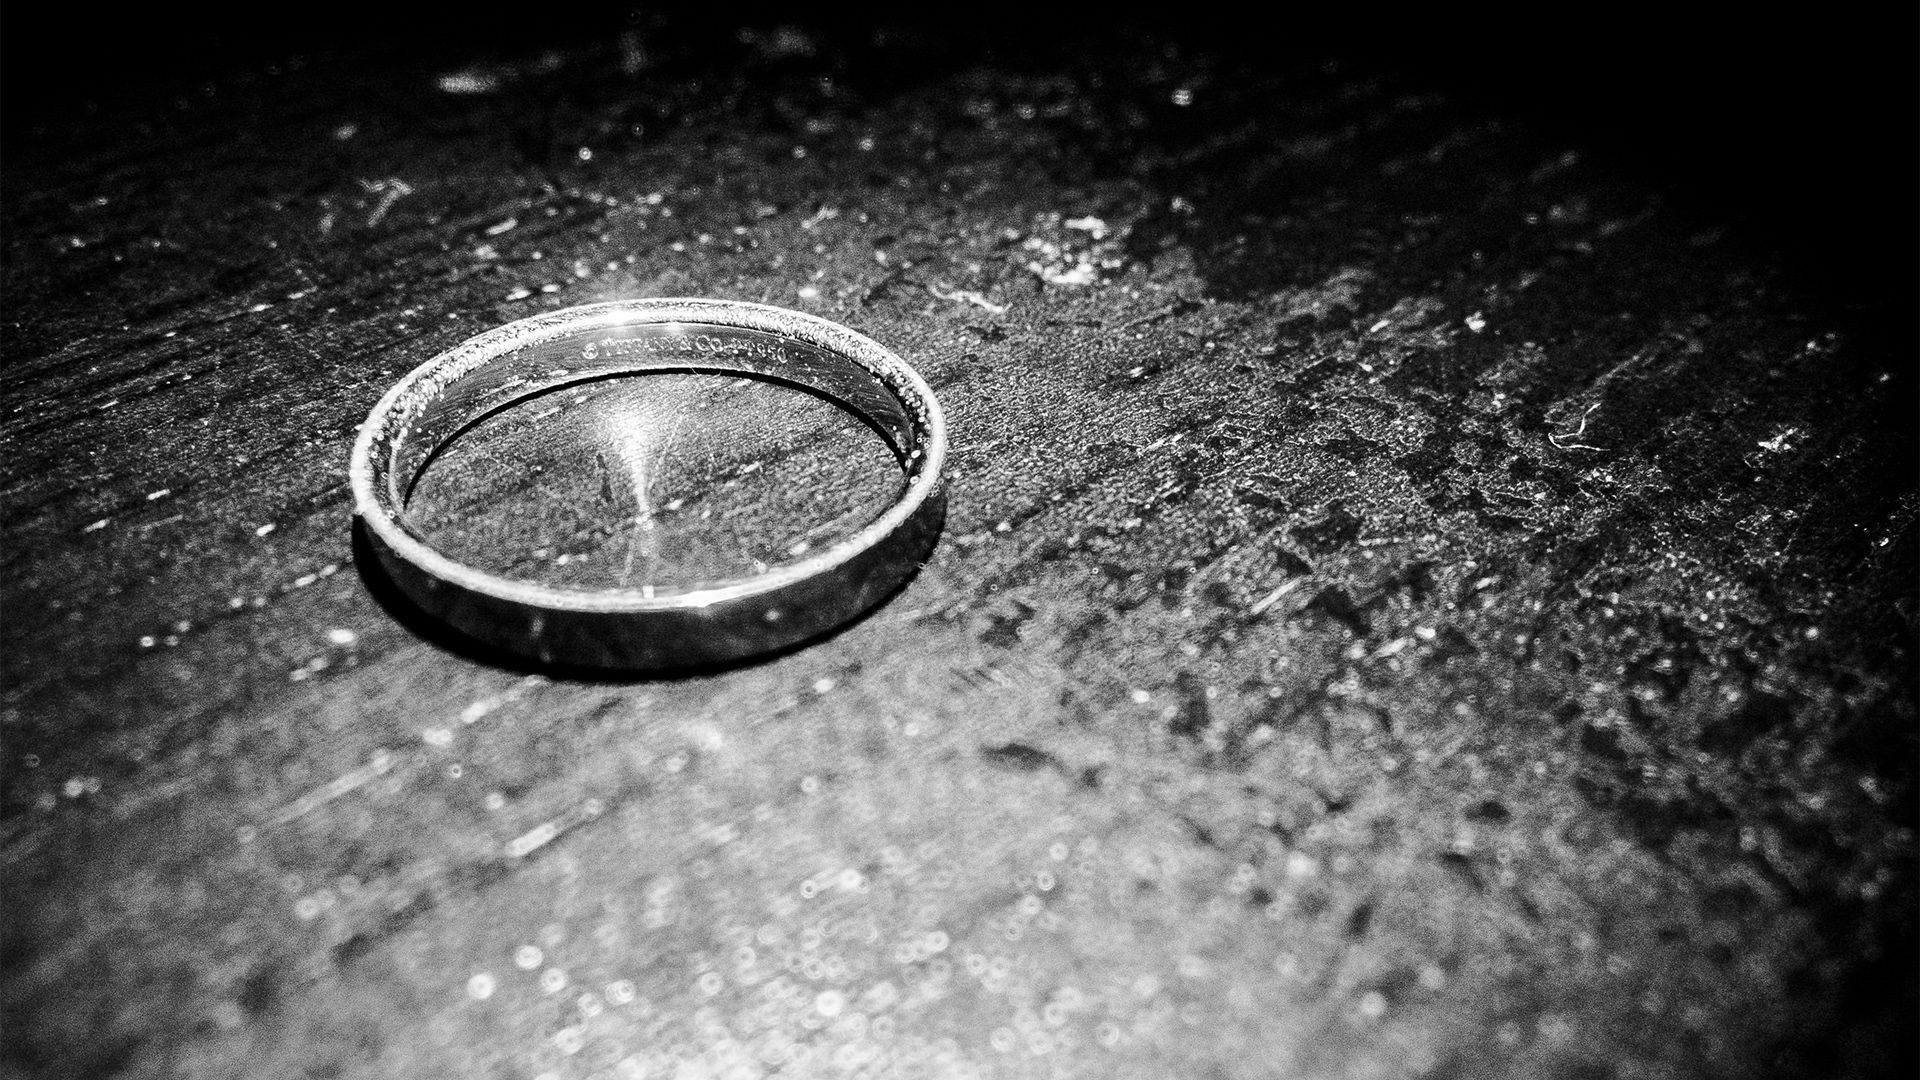 Pour le pape François, le mariage n’est pas seulement un "événement social" mais un "vrai sacrement" | Flickr - 
Billie Grace Ward
- CC BY 2.0 